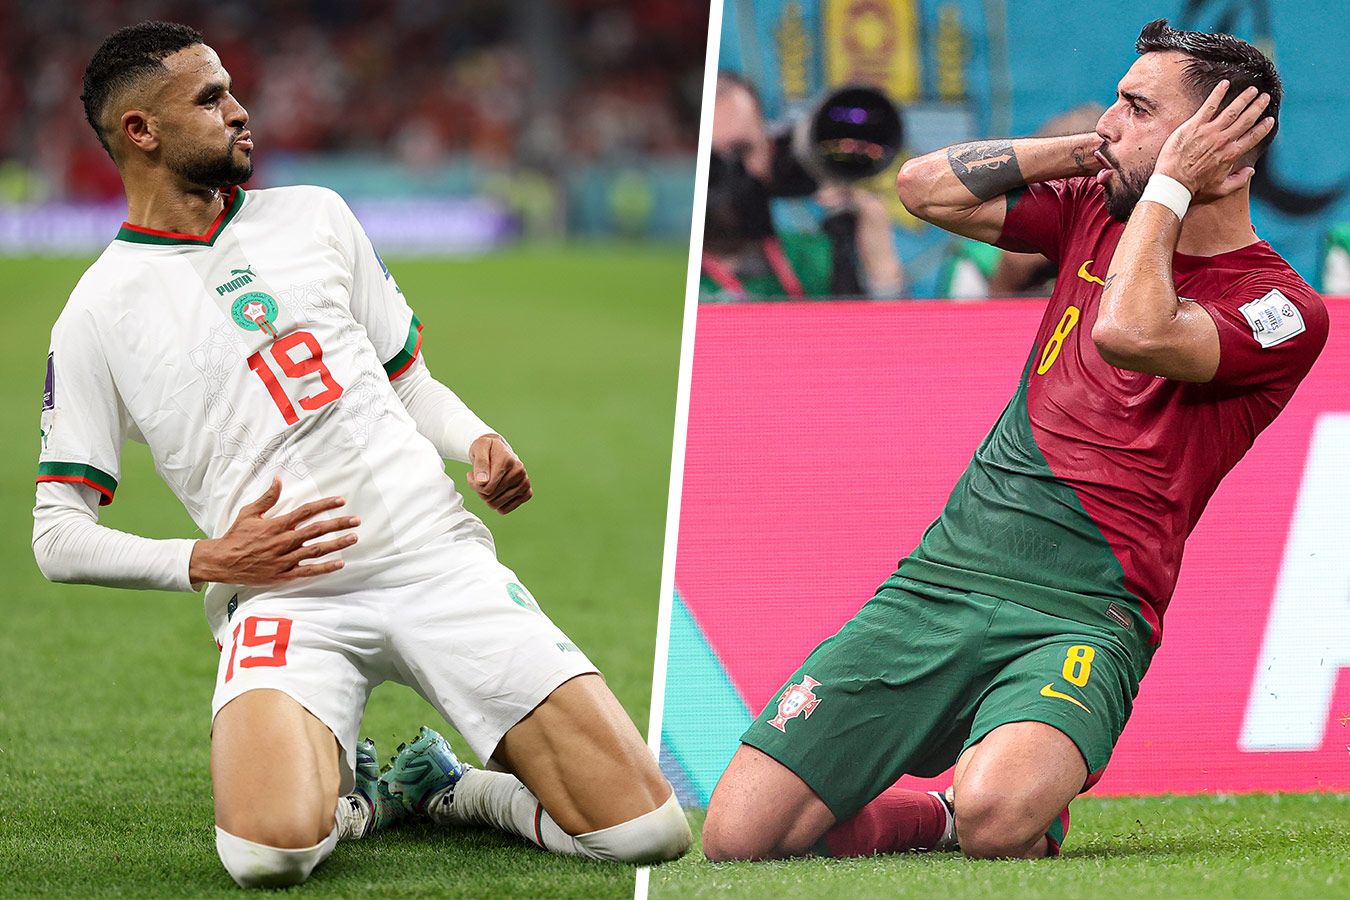 Марокко — Португалия: прямая трансляция матча чемпионата мира — 2022 начнётся в 18:00